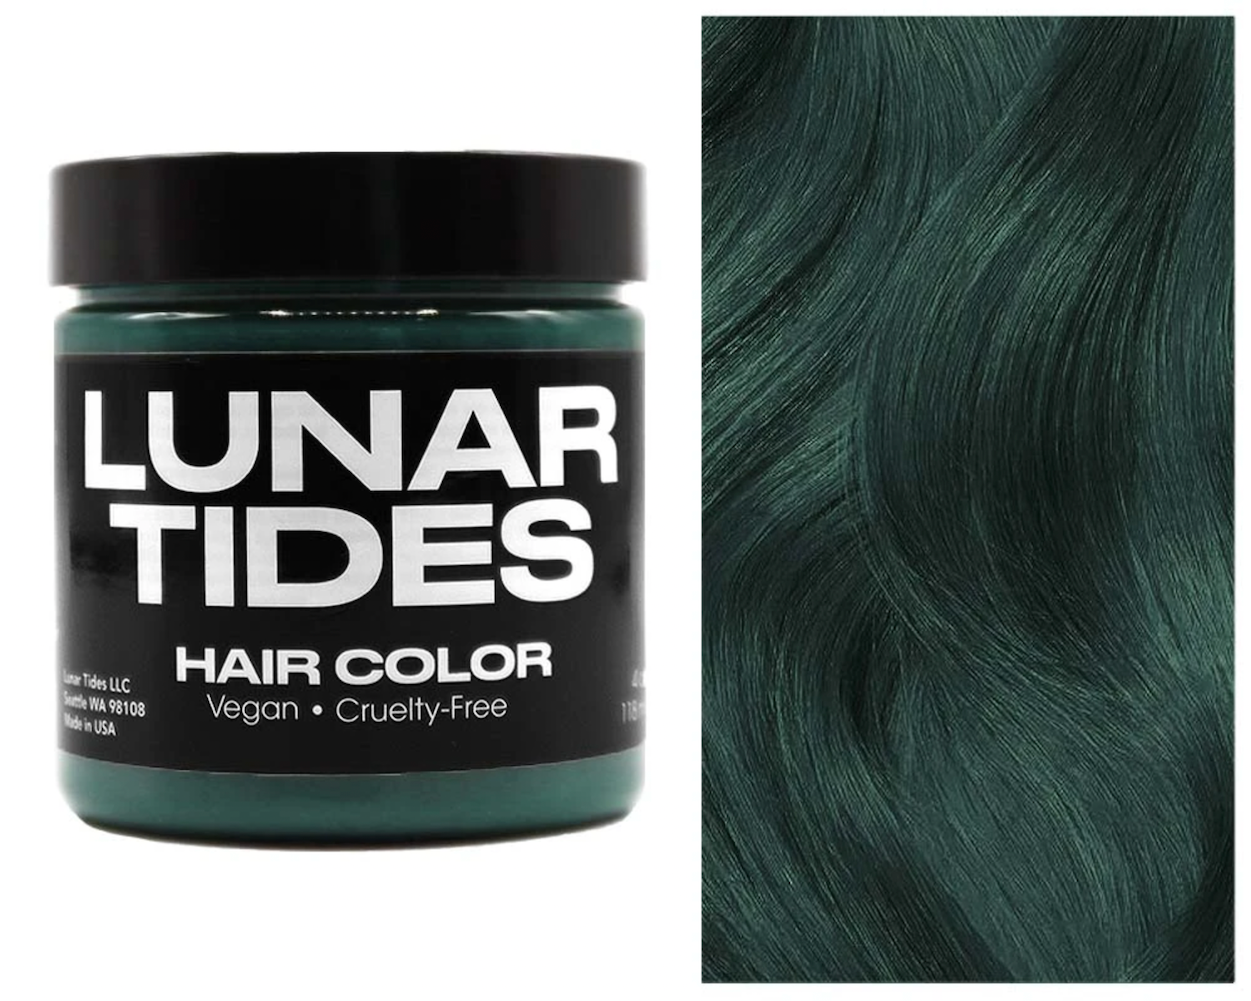 Lunar Tides Hair Dye - Smokey Green